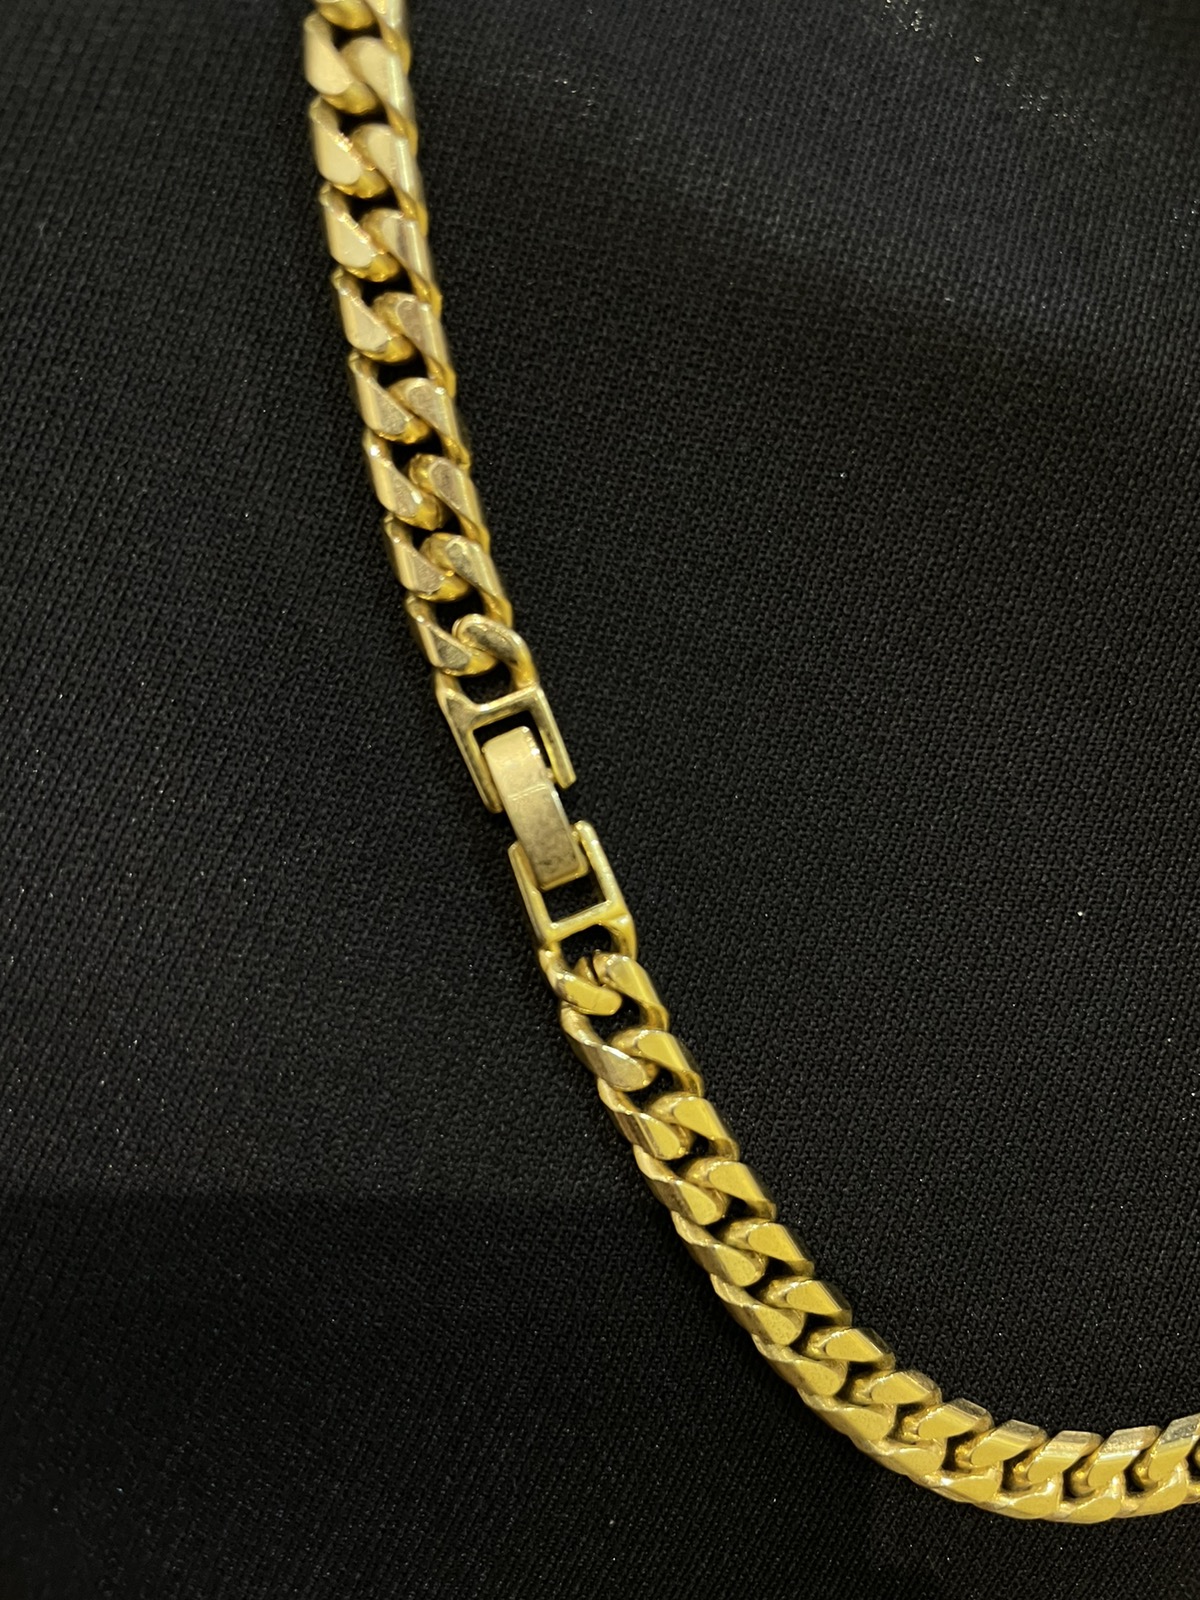 Louis Vuitton padlock / key / chain gold - 8